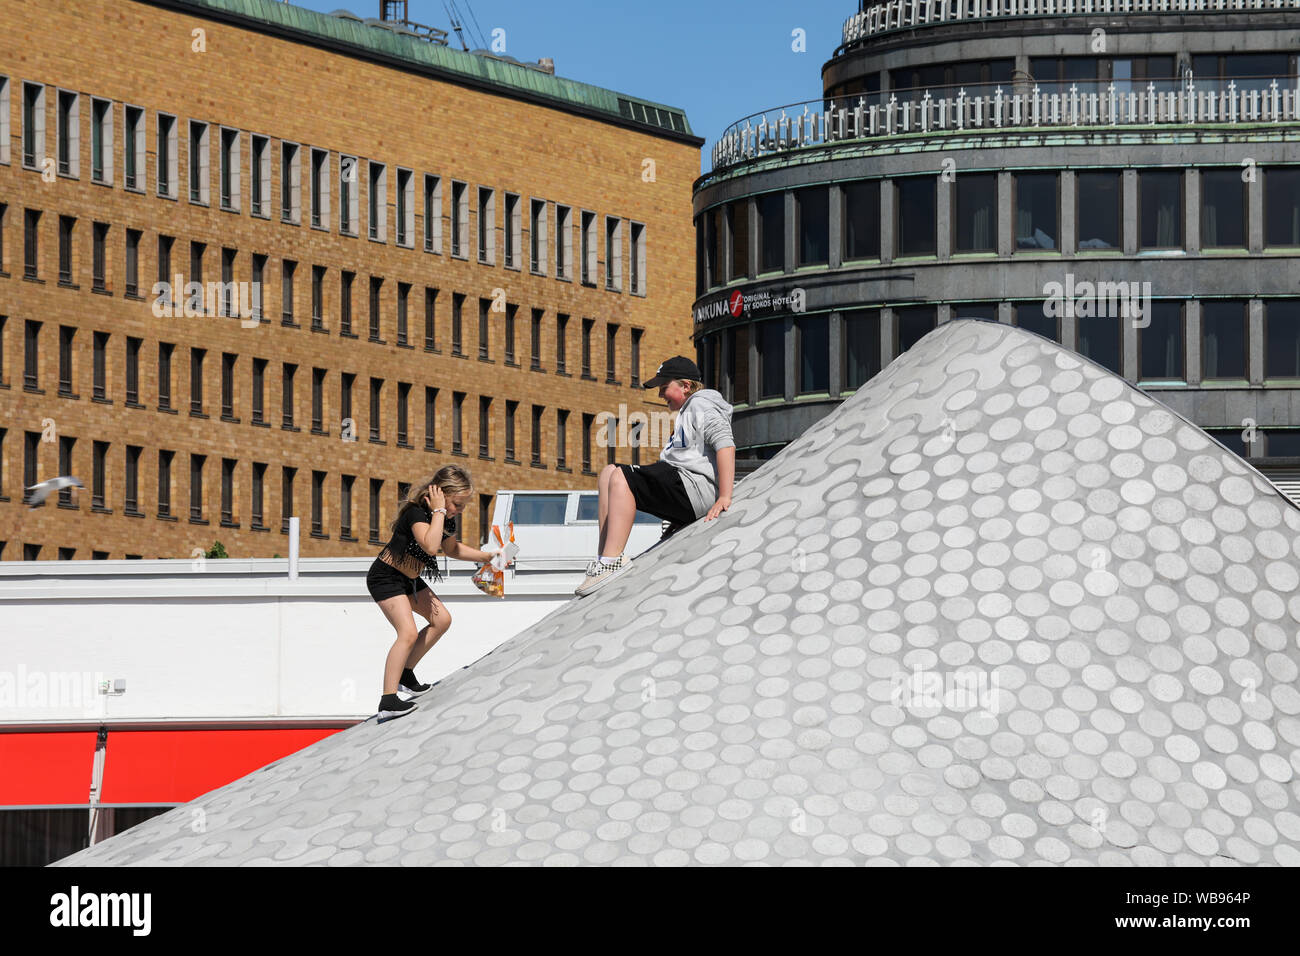 Les enfants de grimper sur le toit du musée d'art Amos Rex - Autres bâtiments reconnaissables dans le contexte - à Helsinki, Finlande Banque D'Images